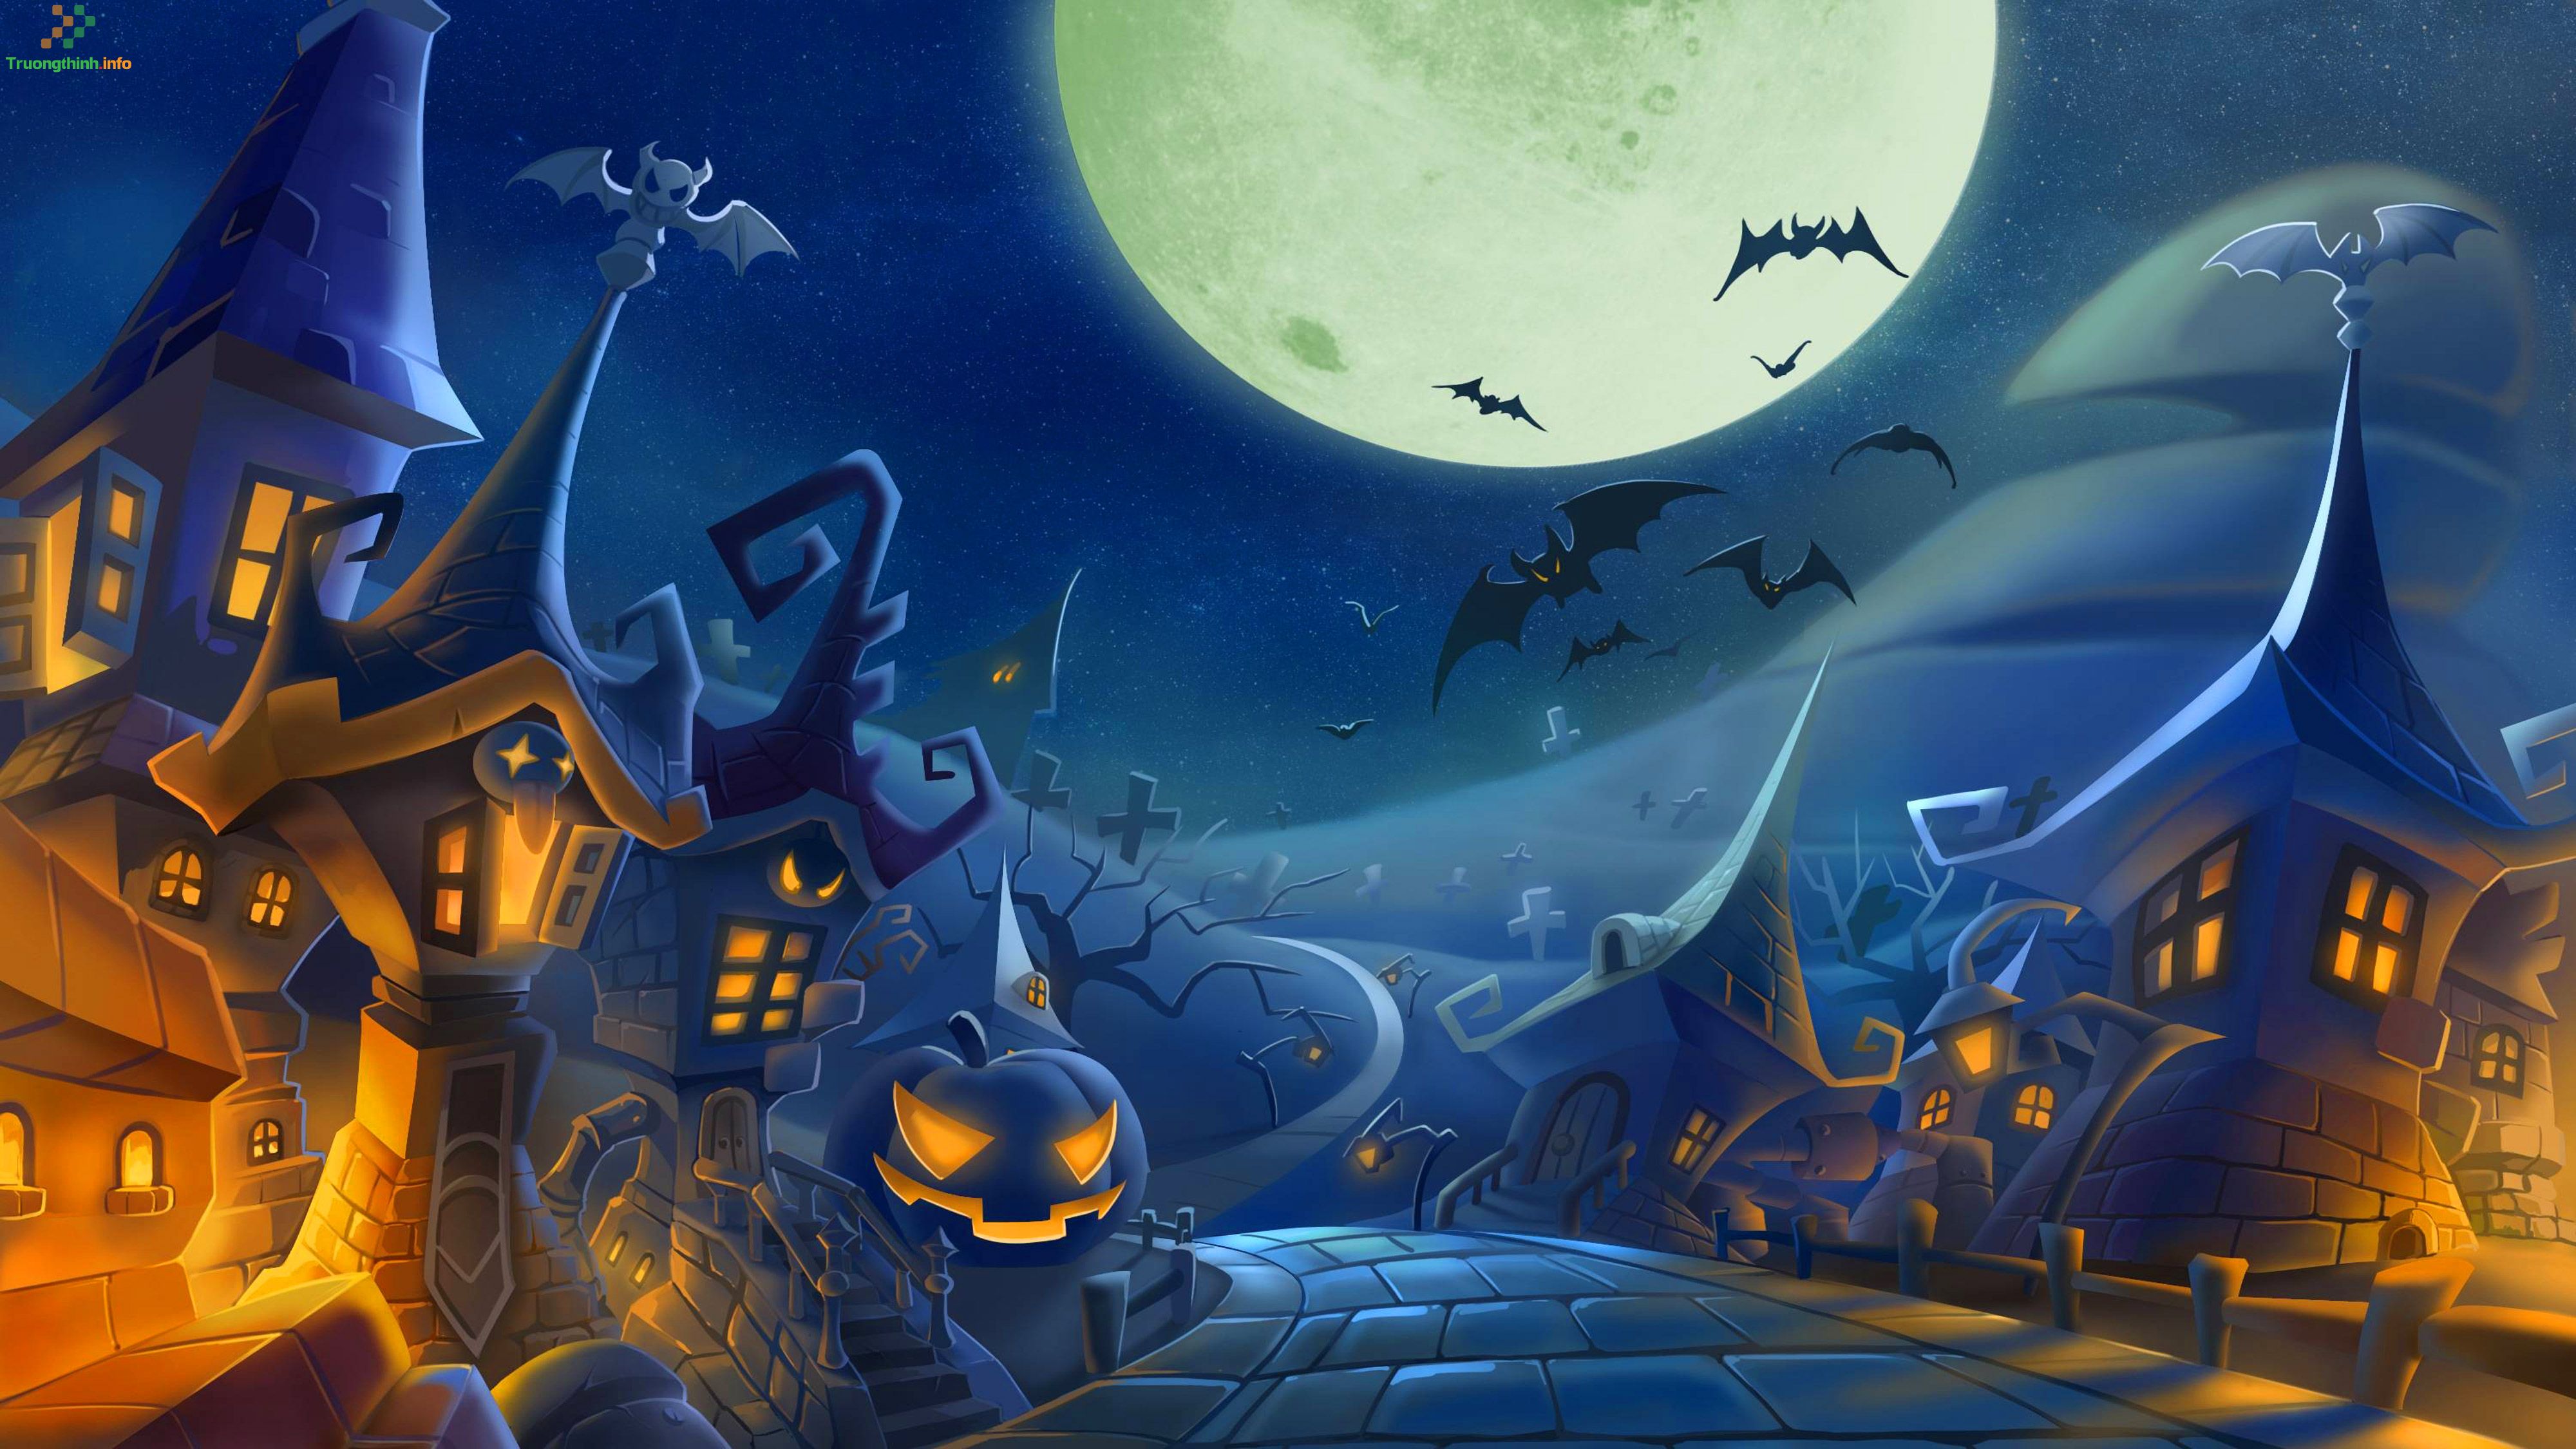 Đừng bỏ lỡ cơ hội để tìm hiểu về đề tài Halloween thông qua những bức tranh vô cùng đặc biệt. Những tác phẩm nghệ thuật đầy sáng tạo sẽ giúp bạn trải nghiệm một mùa Halloween đáng nhớ và đầy lý thú.